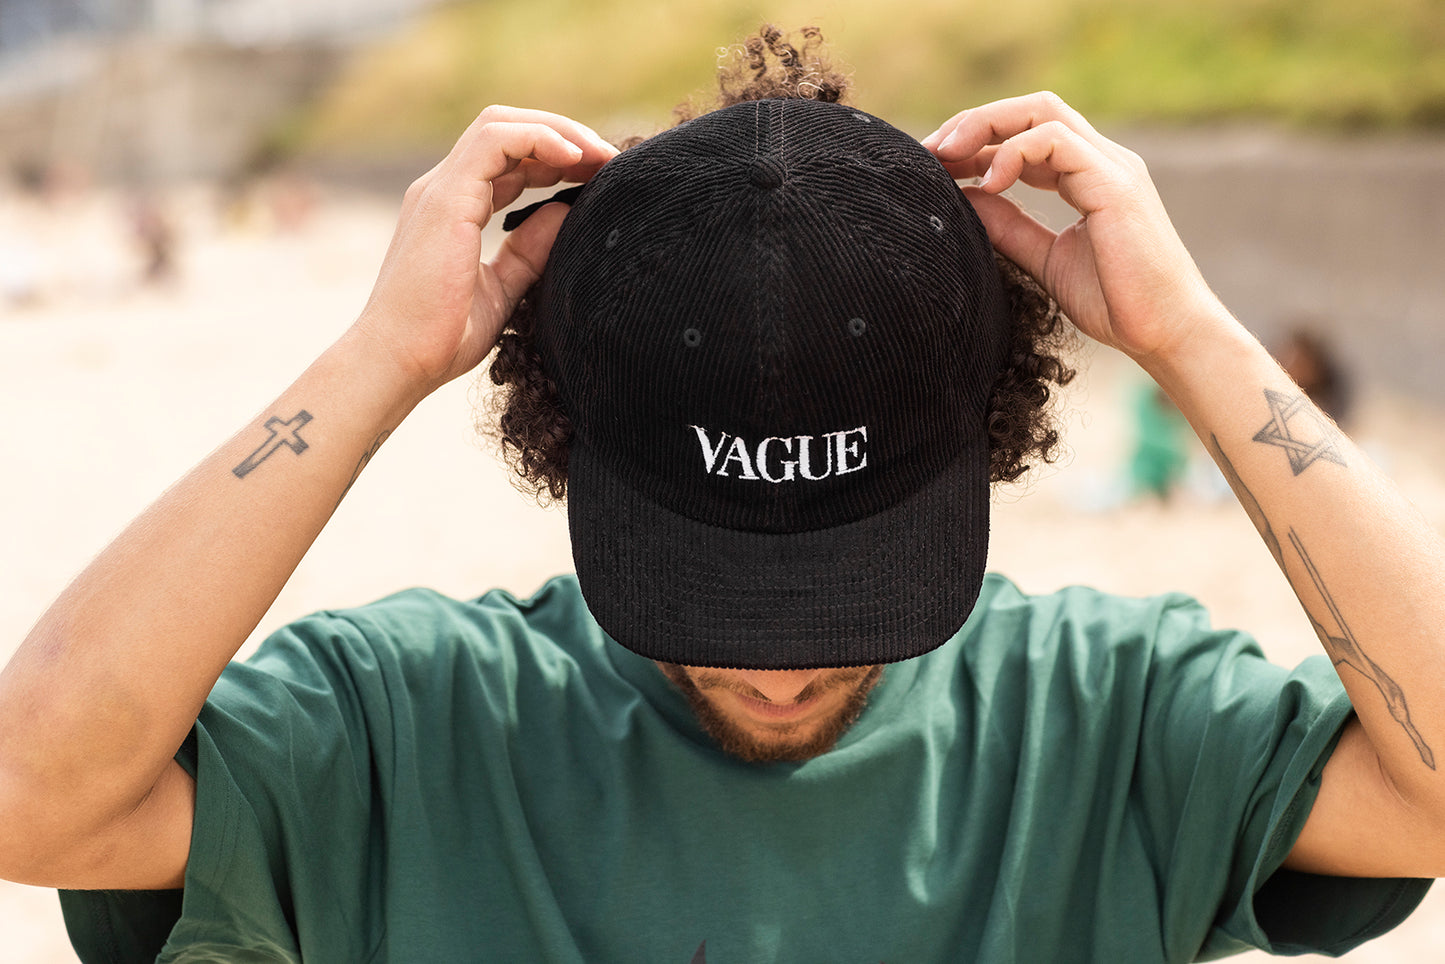 Vague - V@GUE - Cord Hat - Black